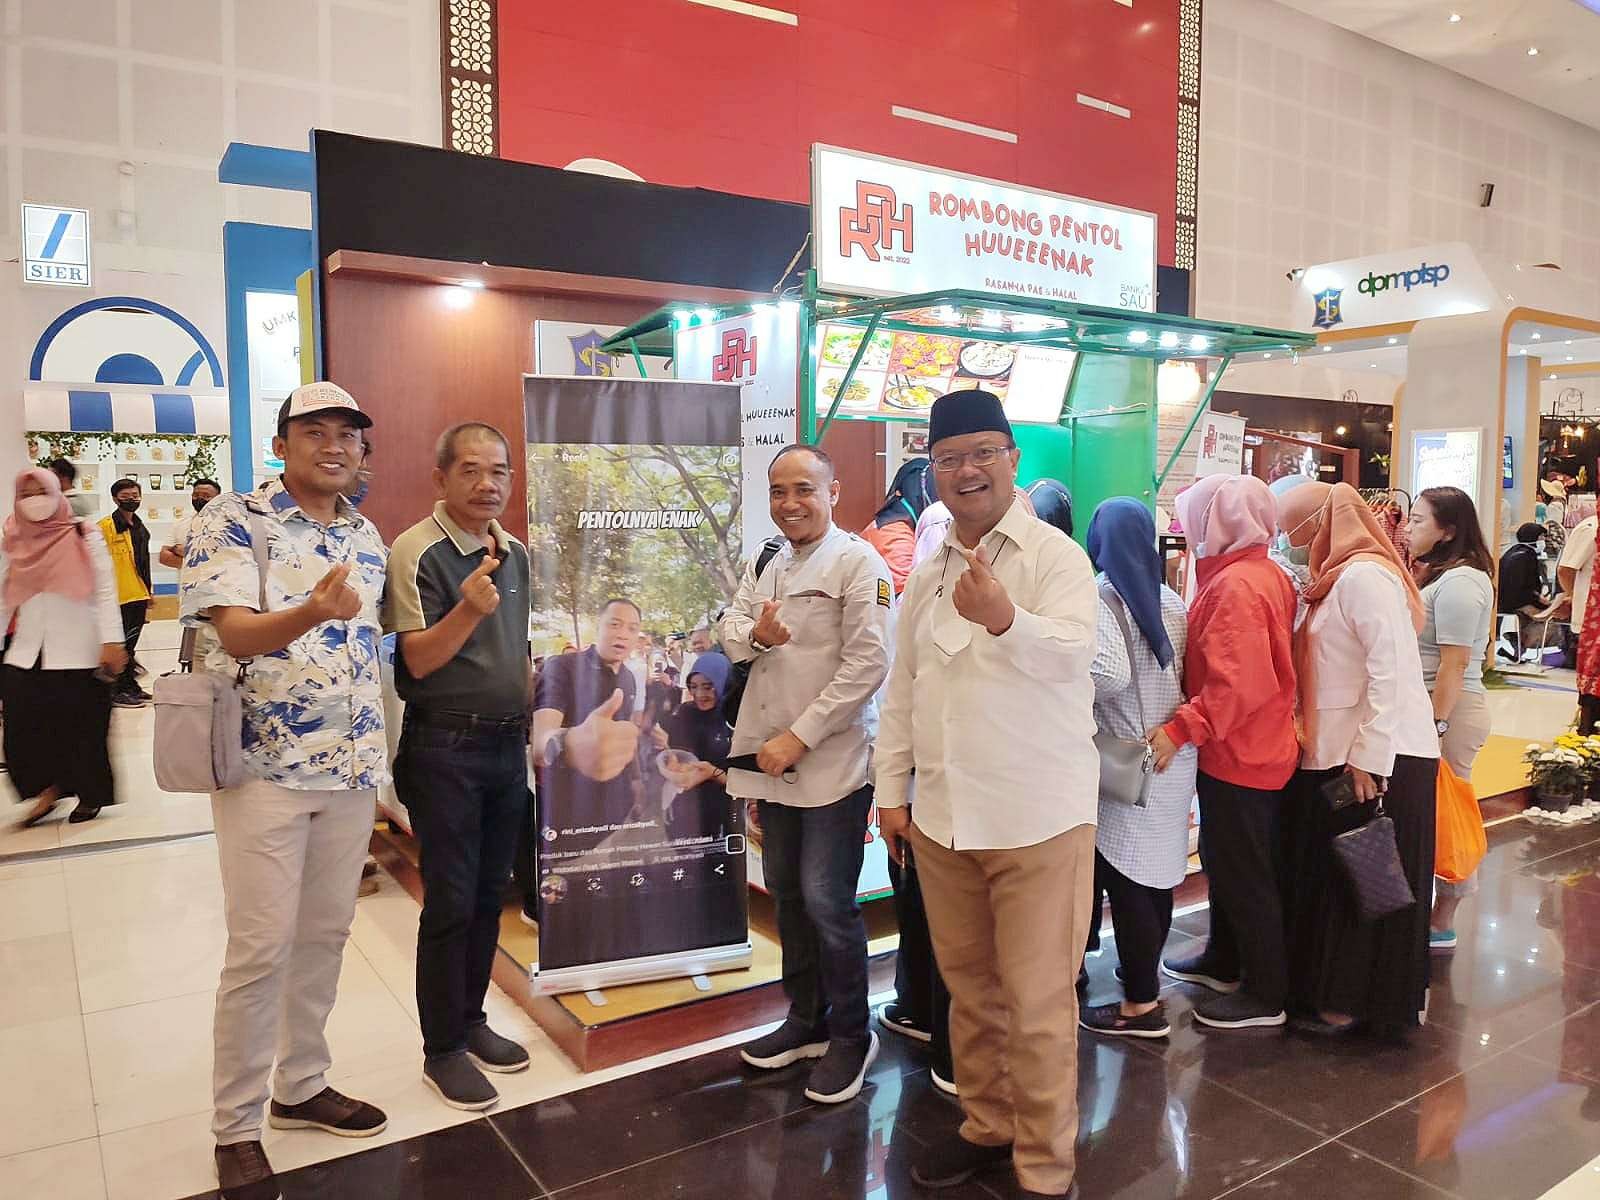 Dirut RPH, Fajar Isnugroho saat meluncurkan Program Rombong Pentol Hueenak di acara Surabaya Great Expo. (Foto: tim dokumentasi RPH)